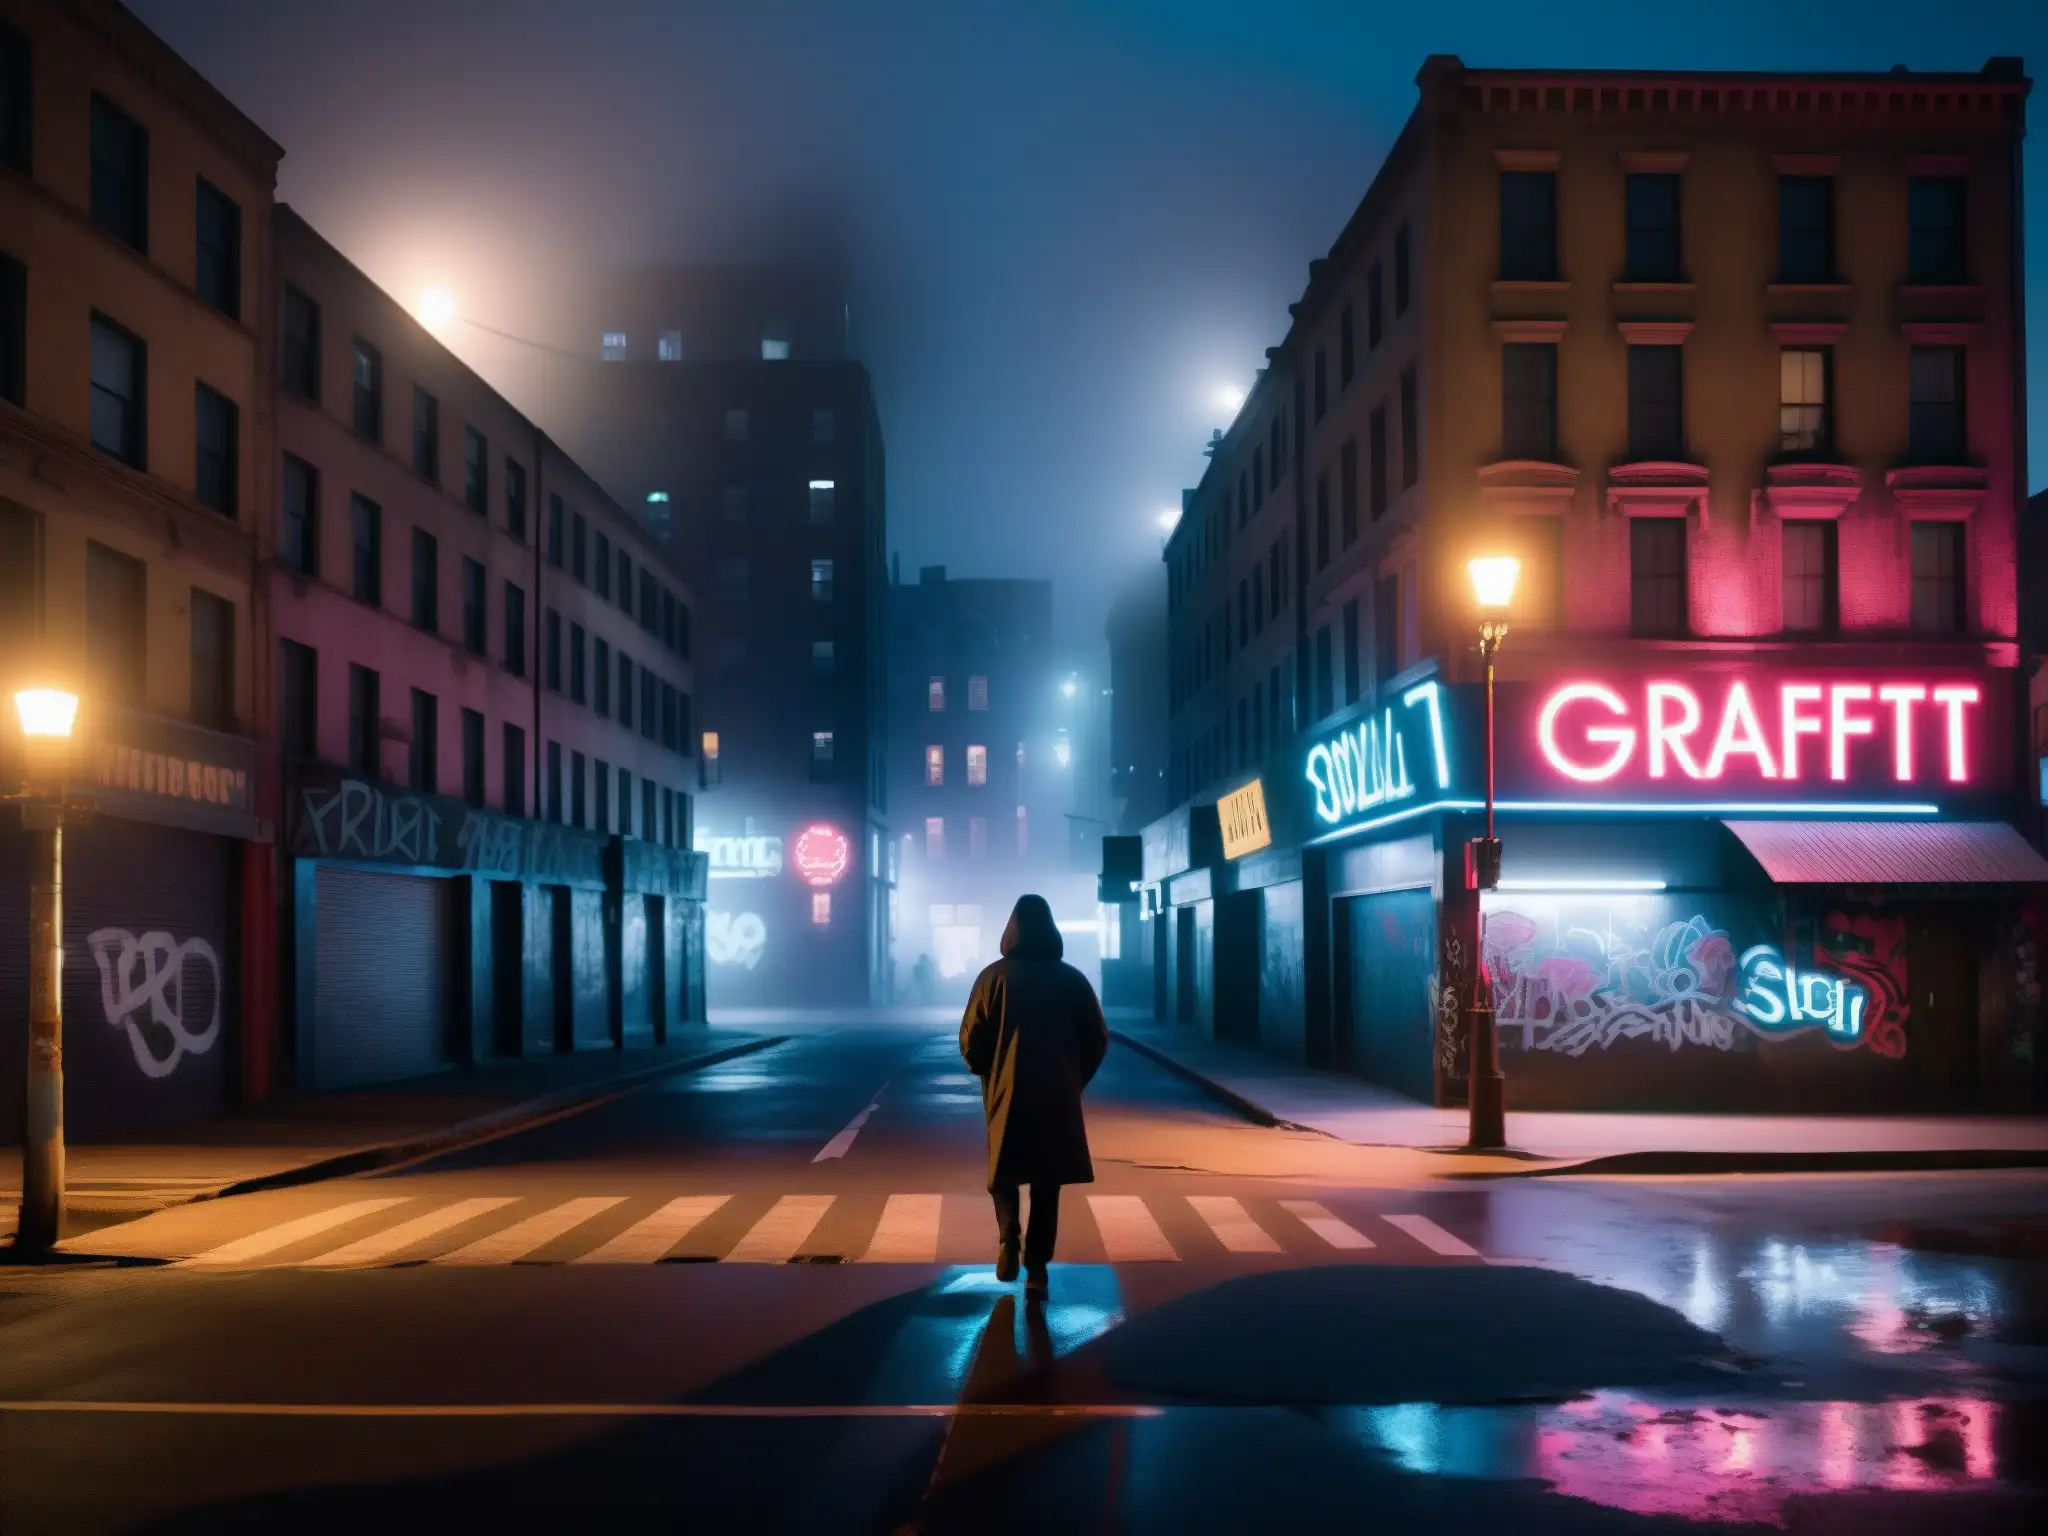 Un solitario camina por una calle urbana oscura y neblinosa, con grafitis y luces de neón, transmitiendo desconfianza social en leyendas urbanas